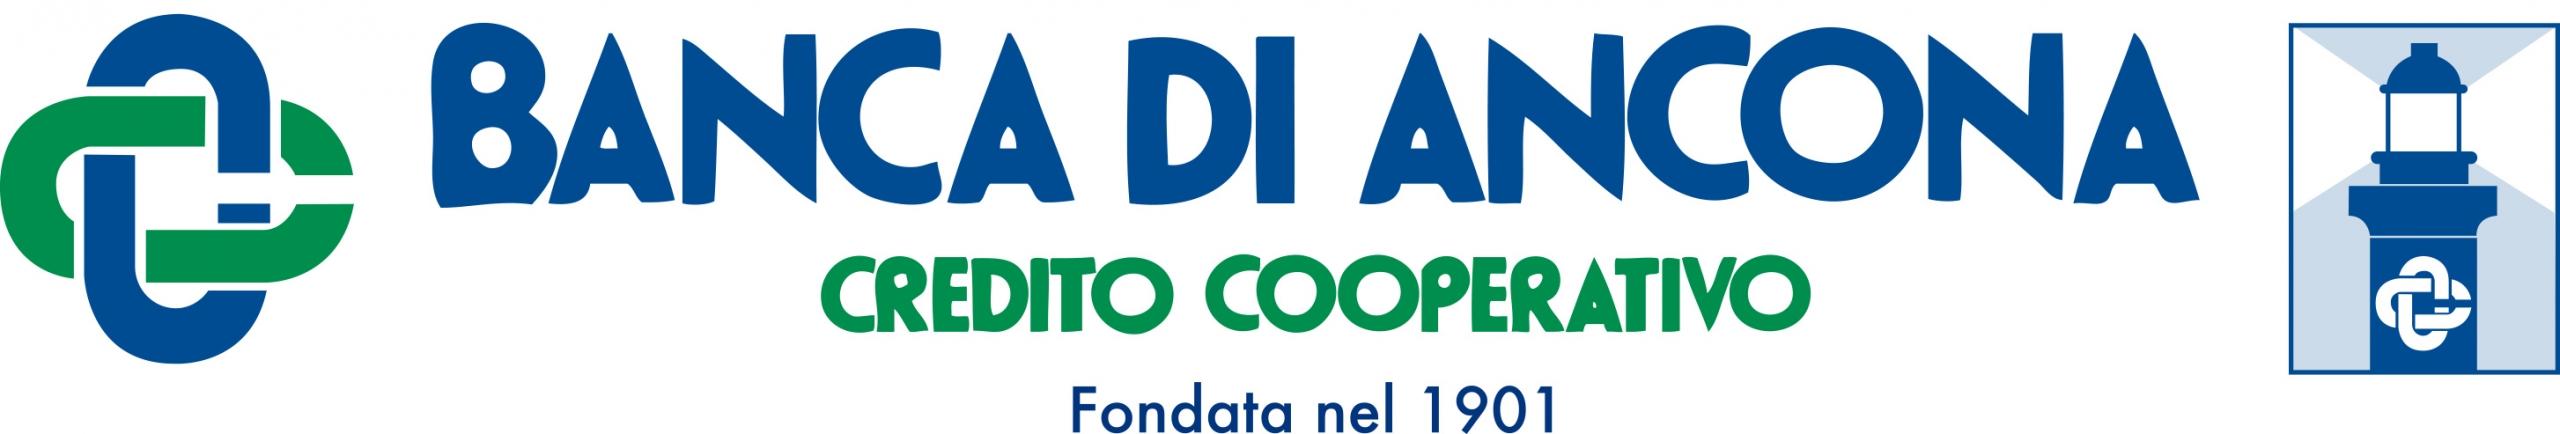 Banca di Ancona credito cooperativo